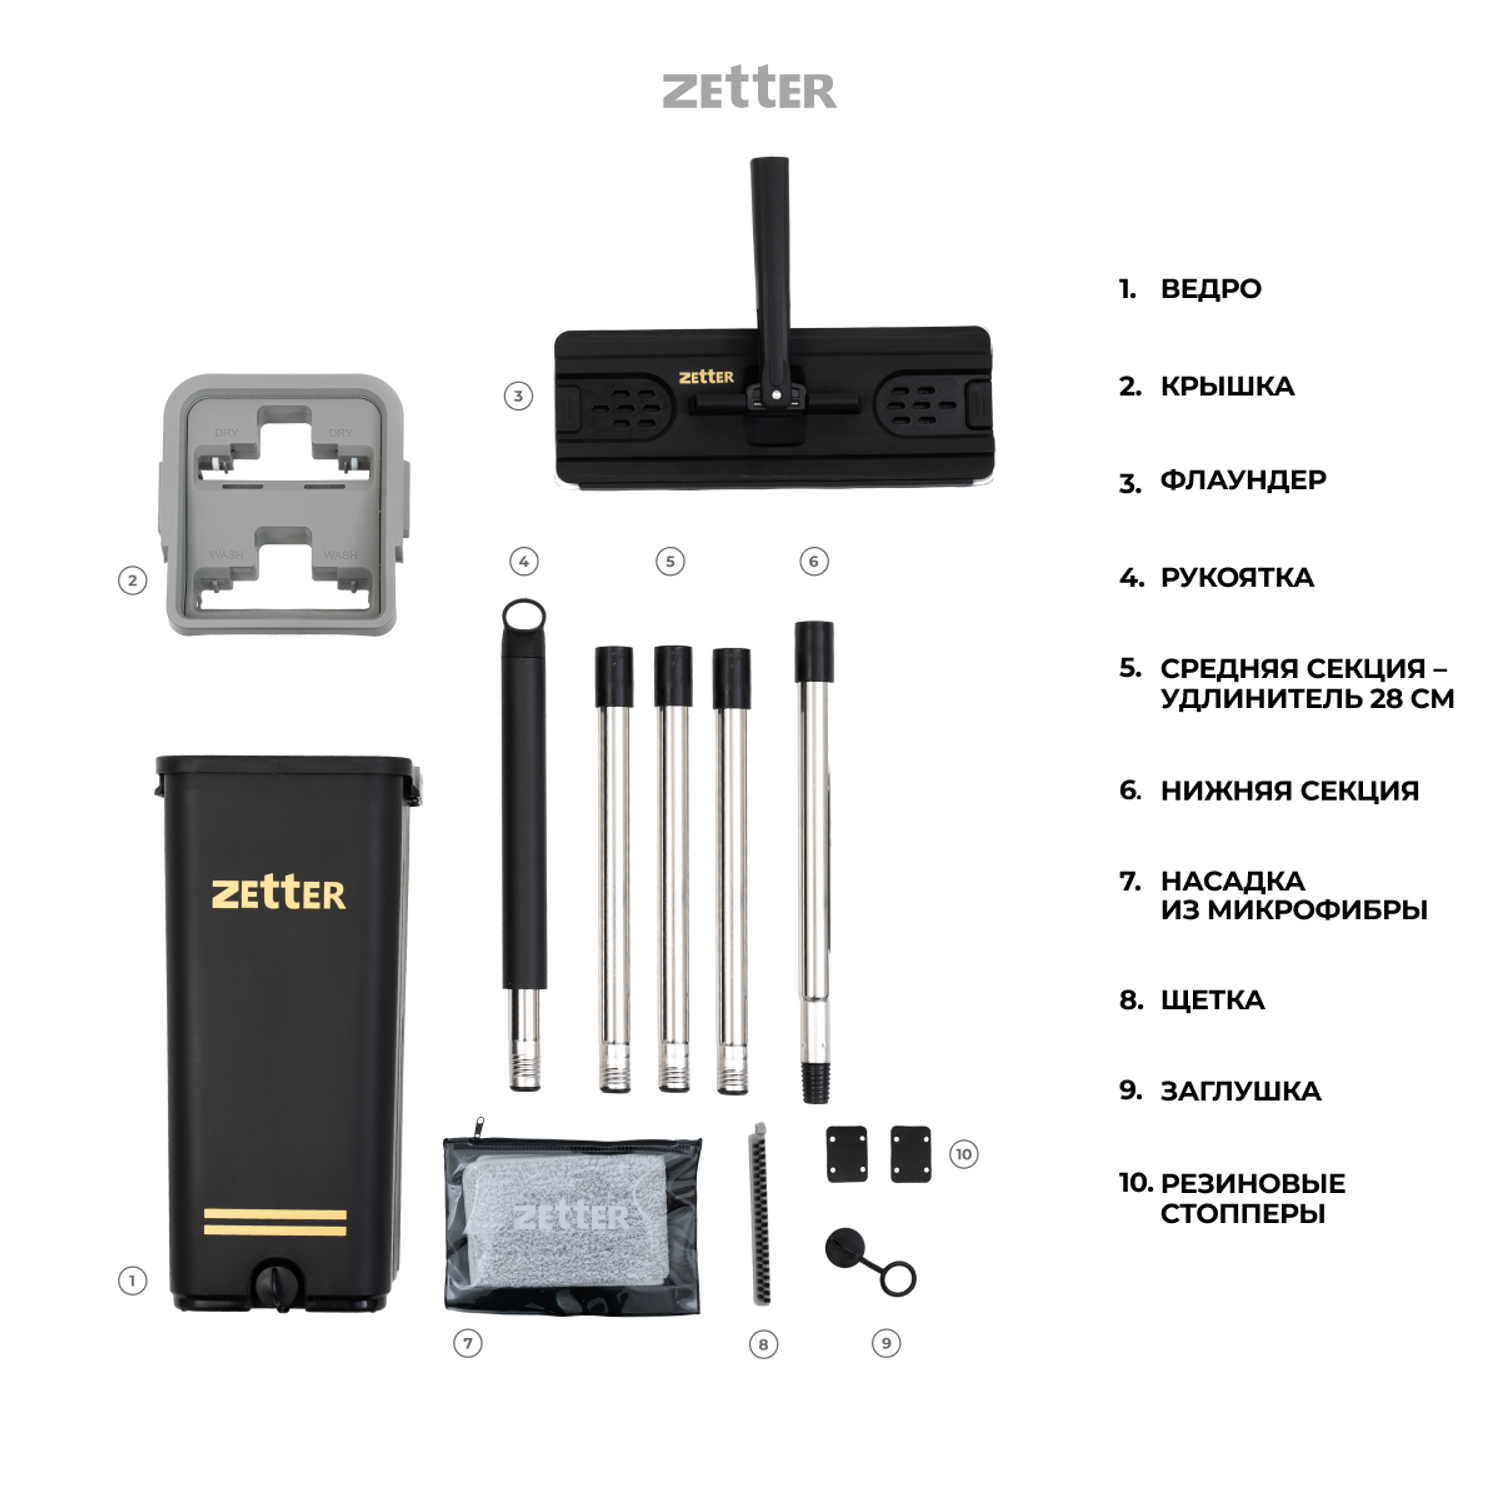 Система для уборки ZETTER S 6.5 л - фото 8